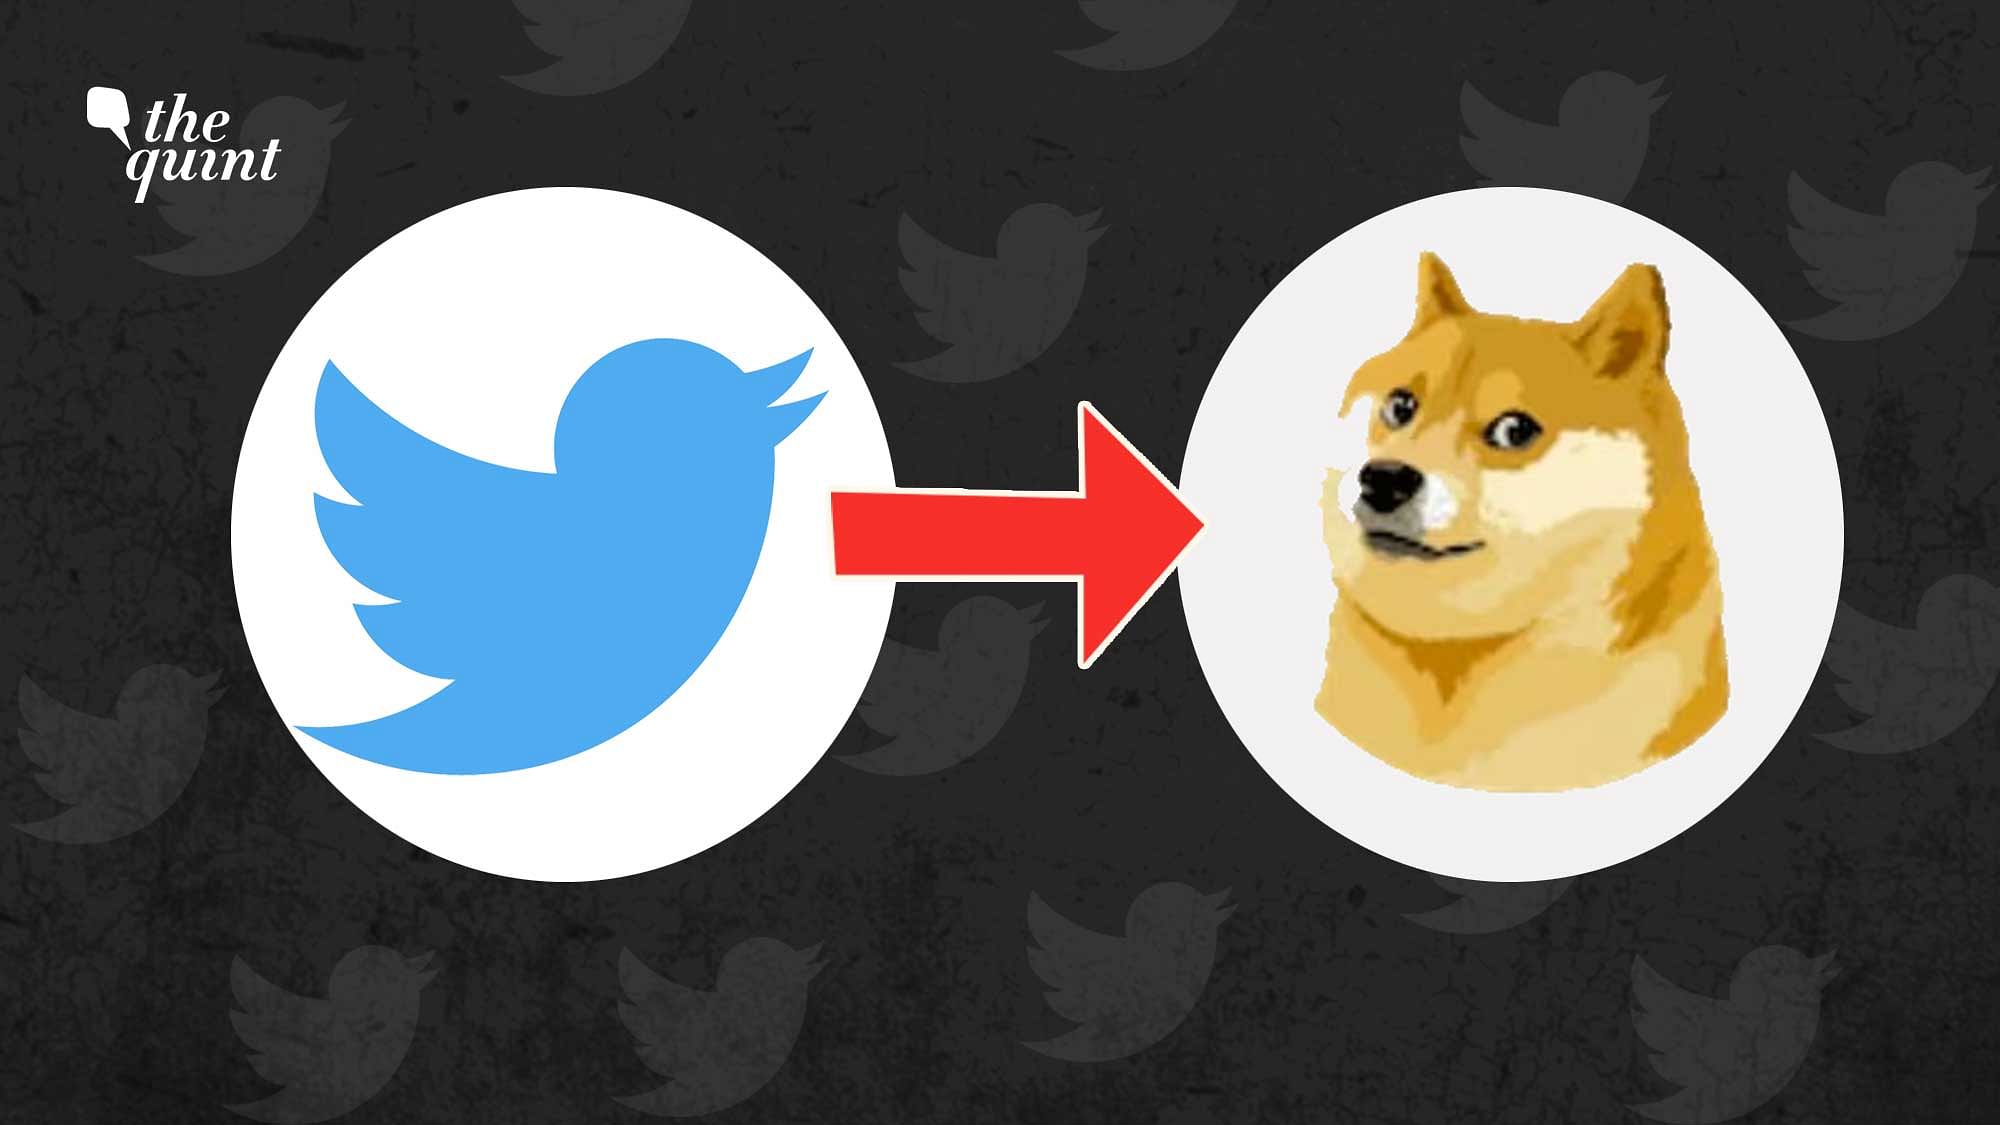 doge twitter logo